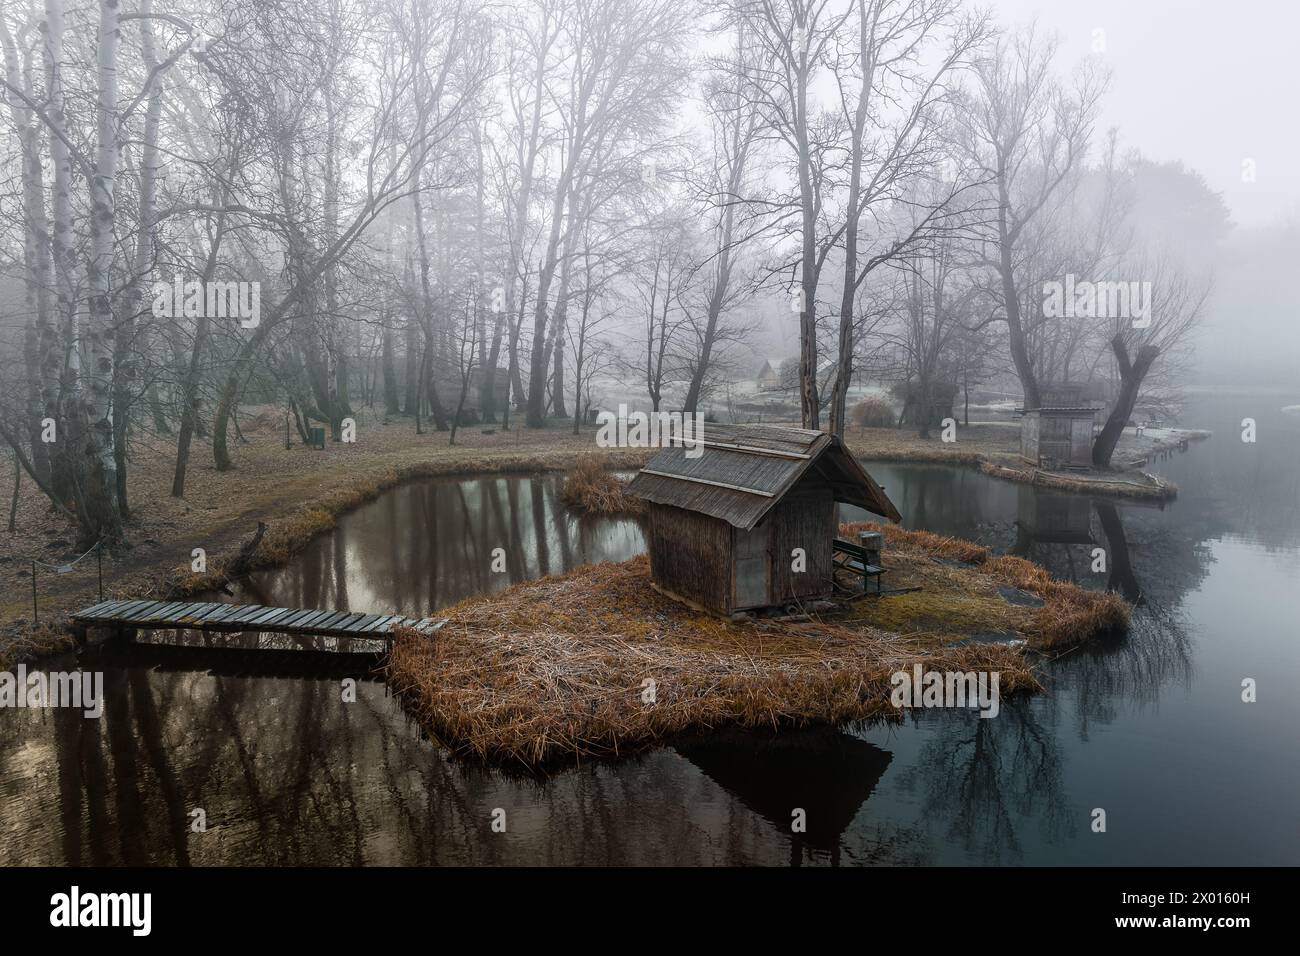 Szodliget, Ungarn - aus der Vogelperspektive eine traumhafte Winterszene am Szodliget Angelsee mit Fischerhütten und starkem Nebel an einem kalten Wintermorgen Stockfoto